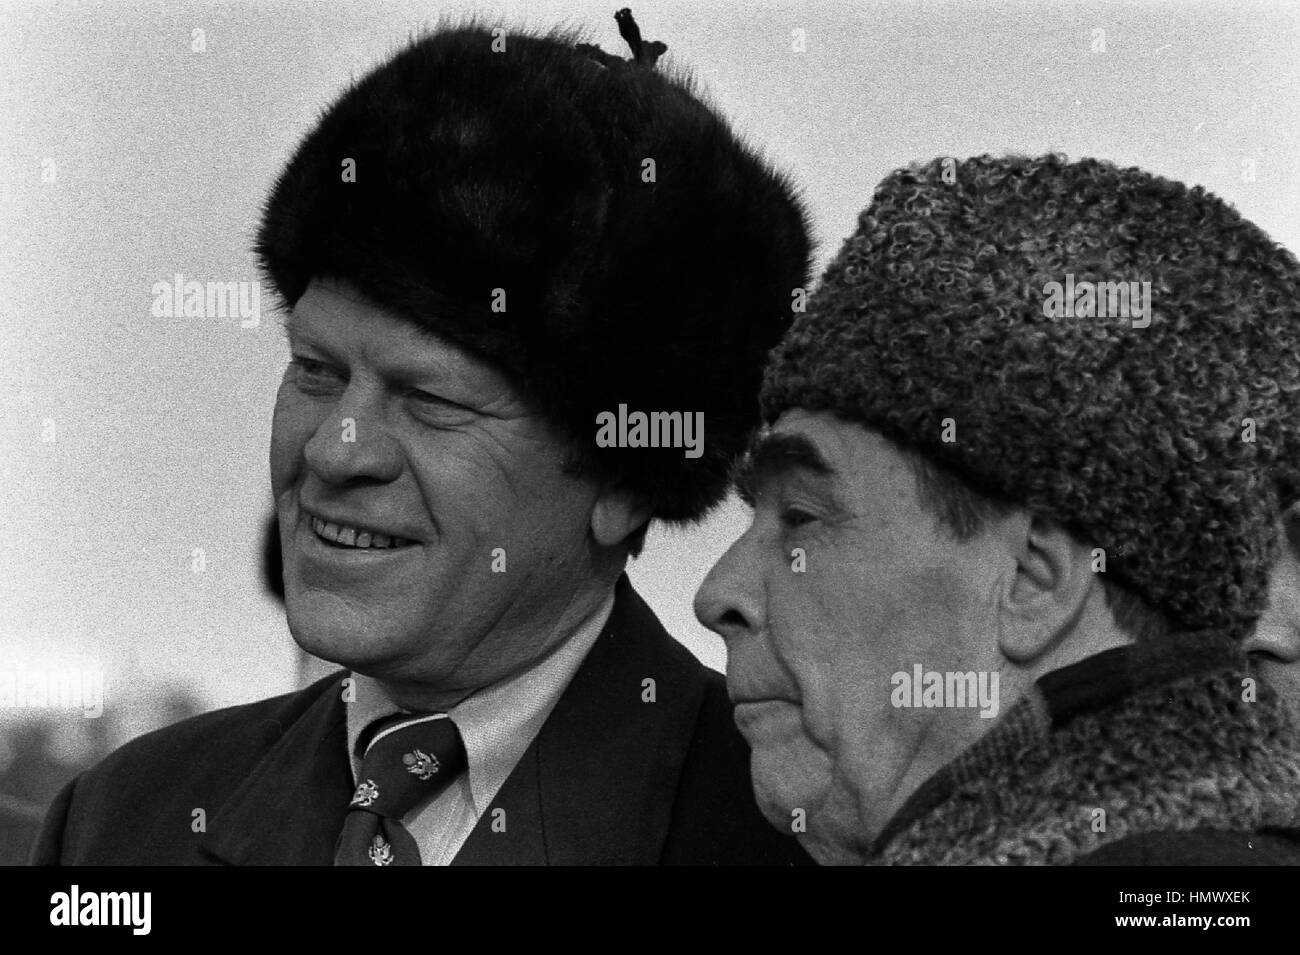 US-Präsident Gerald Ford ein Russe tragen Pelz Hut mit sowjetischen Generalsekretär Leonid Brezhnev bei der Ankunft am lang Airbase 23. November 1974 in Wladiwostok, Russland, UdSSR. Ford ist in Wladiwostok zu einem zweitägigen Gipfel über Rüstungskontrolle. Stockfoto